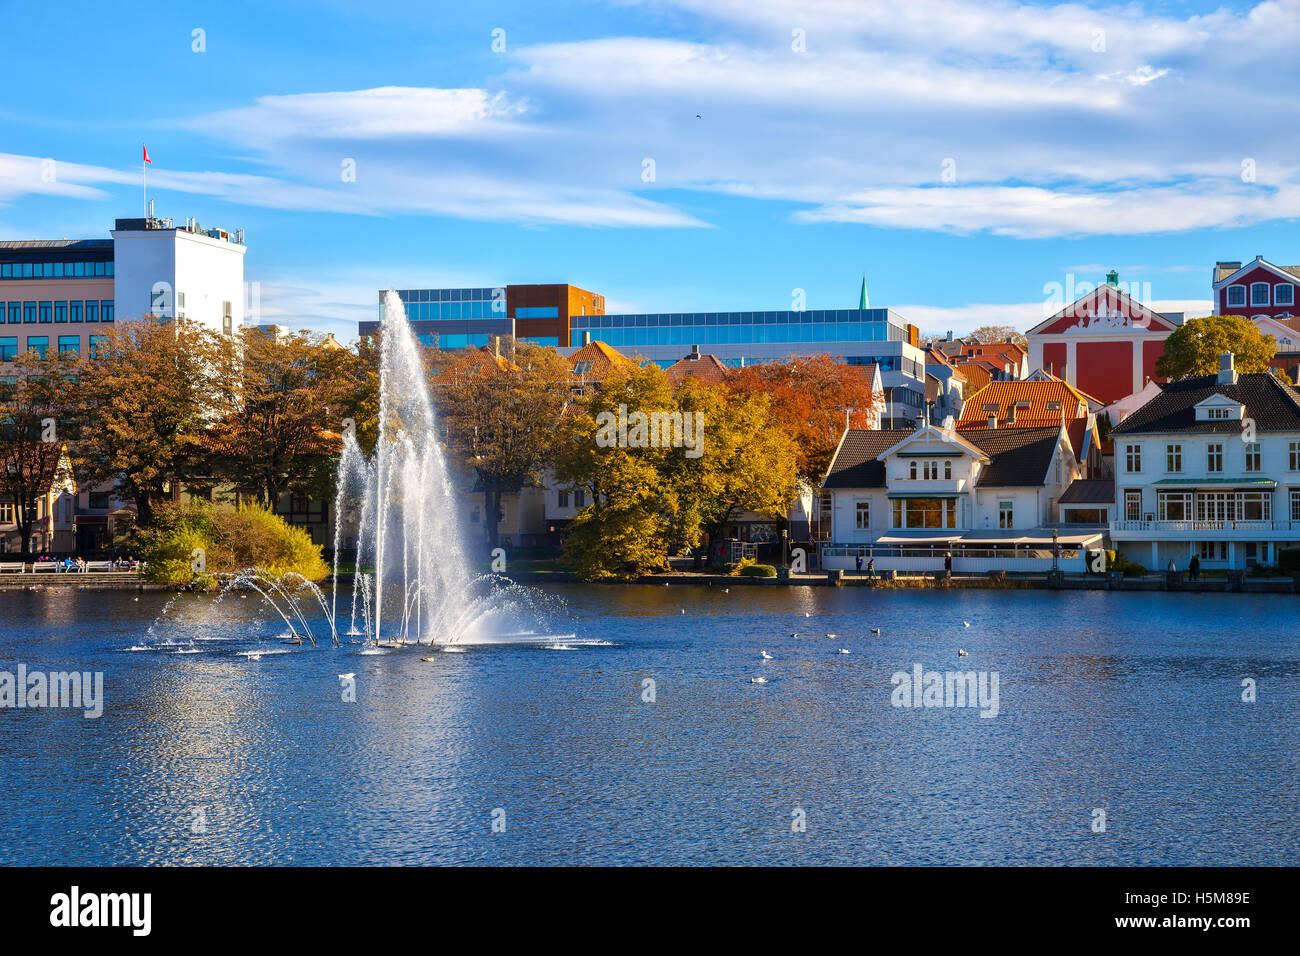 Parc de la ville avec un lac dans le centre-ville de Stavanger, Norvège. Banque D'Images